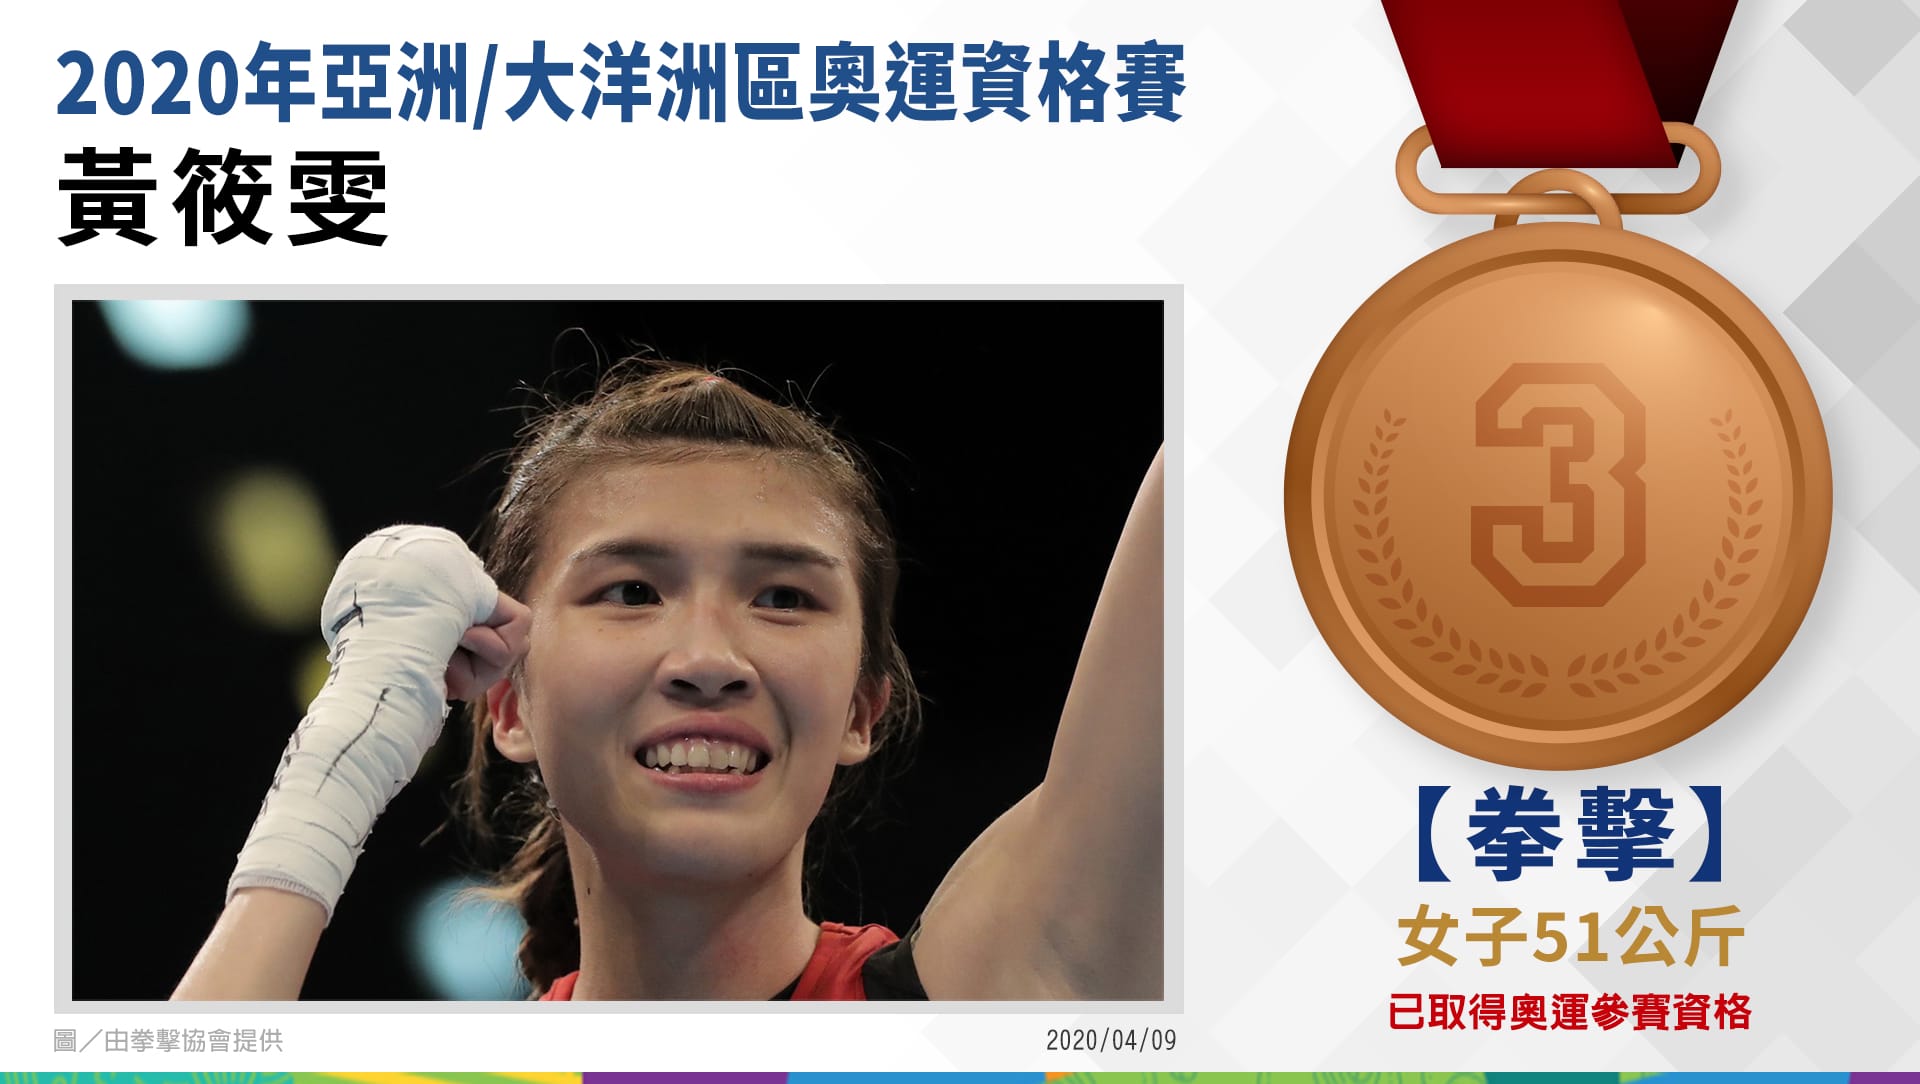  黃筱雯51公斤級第3名